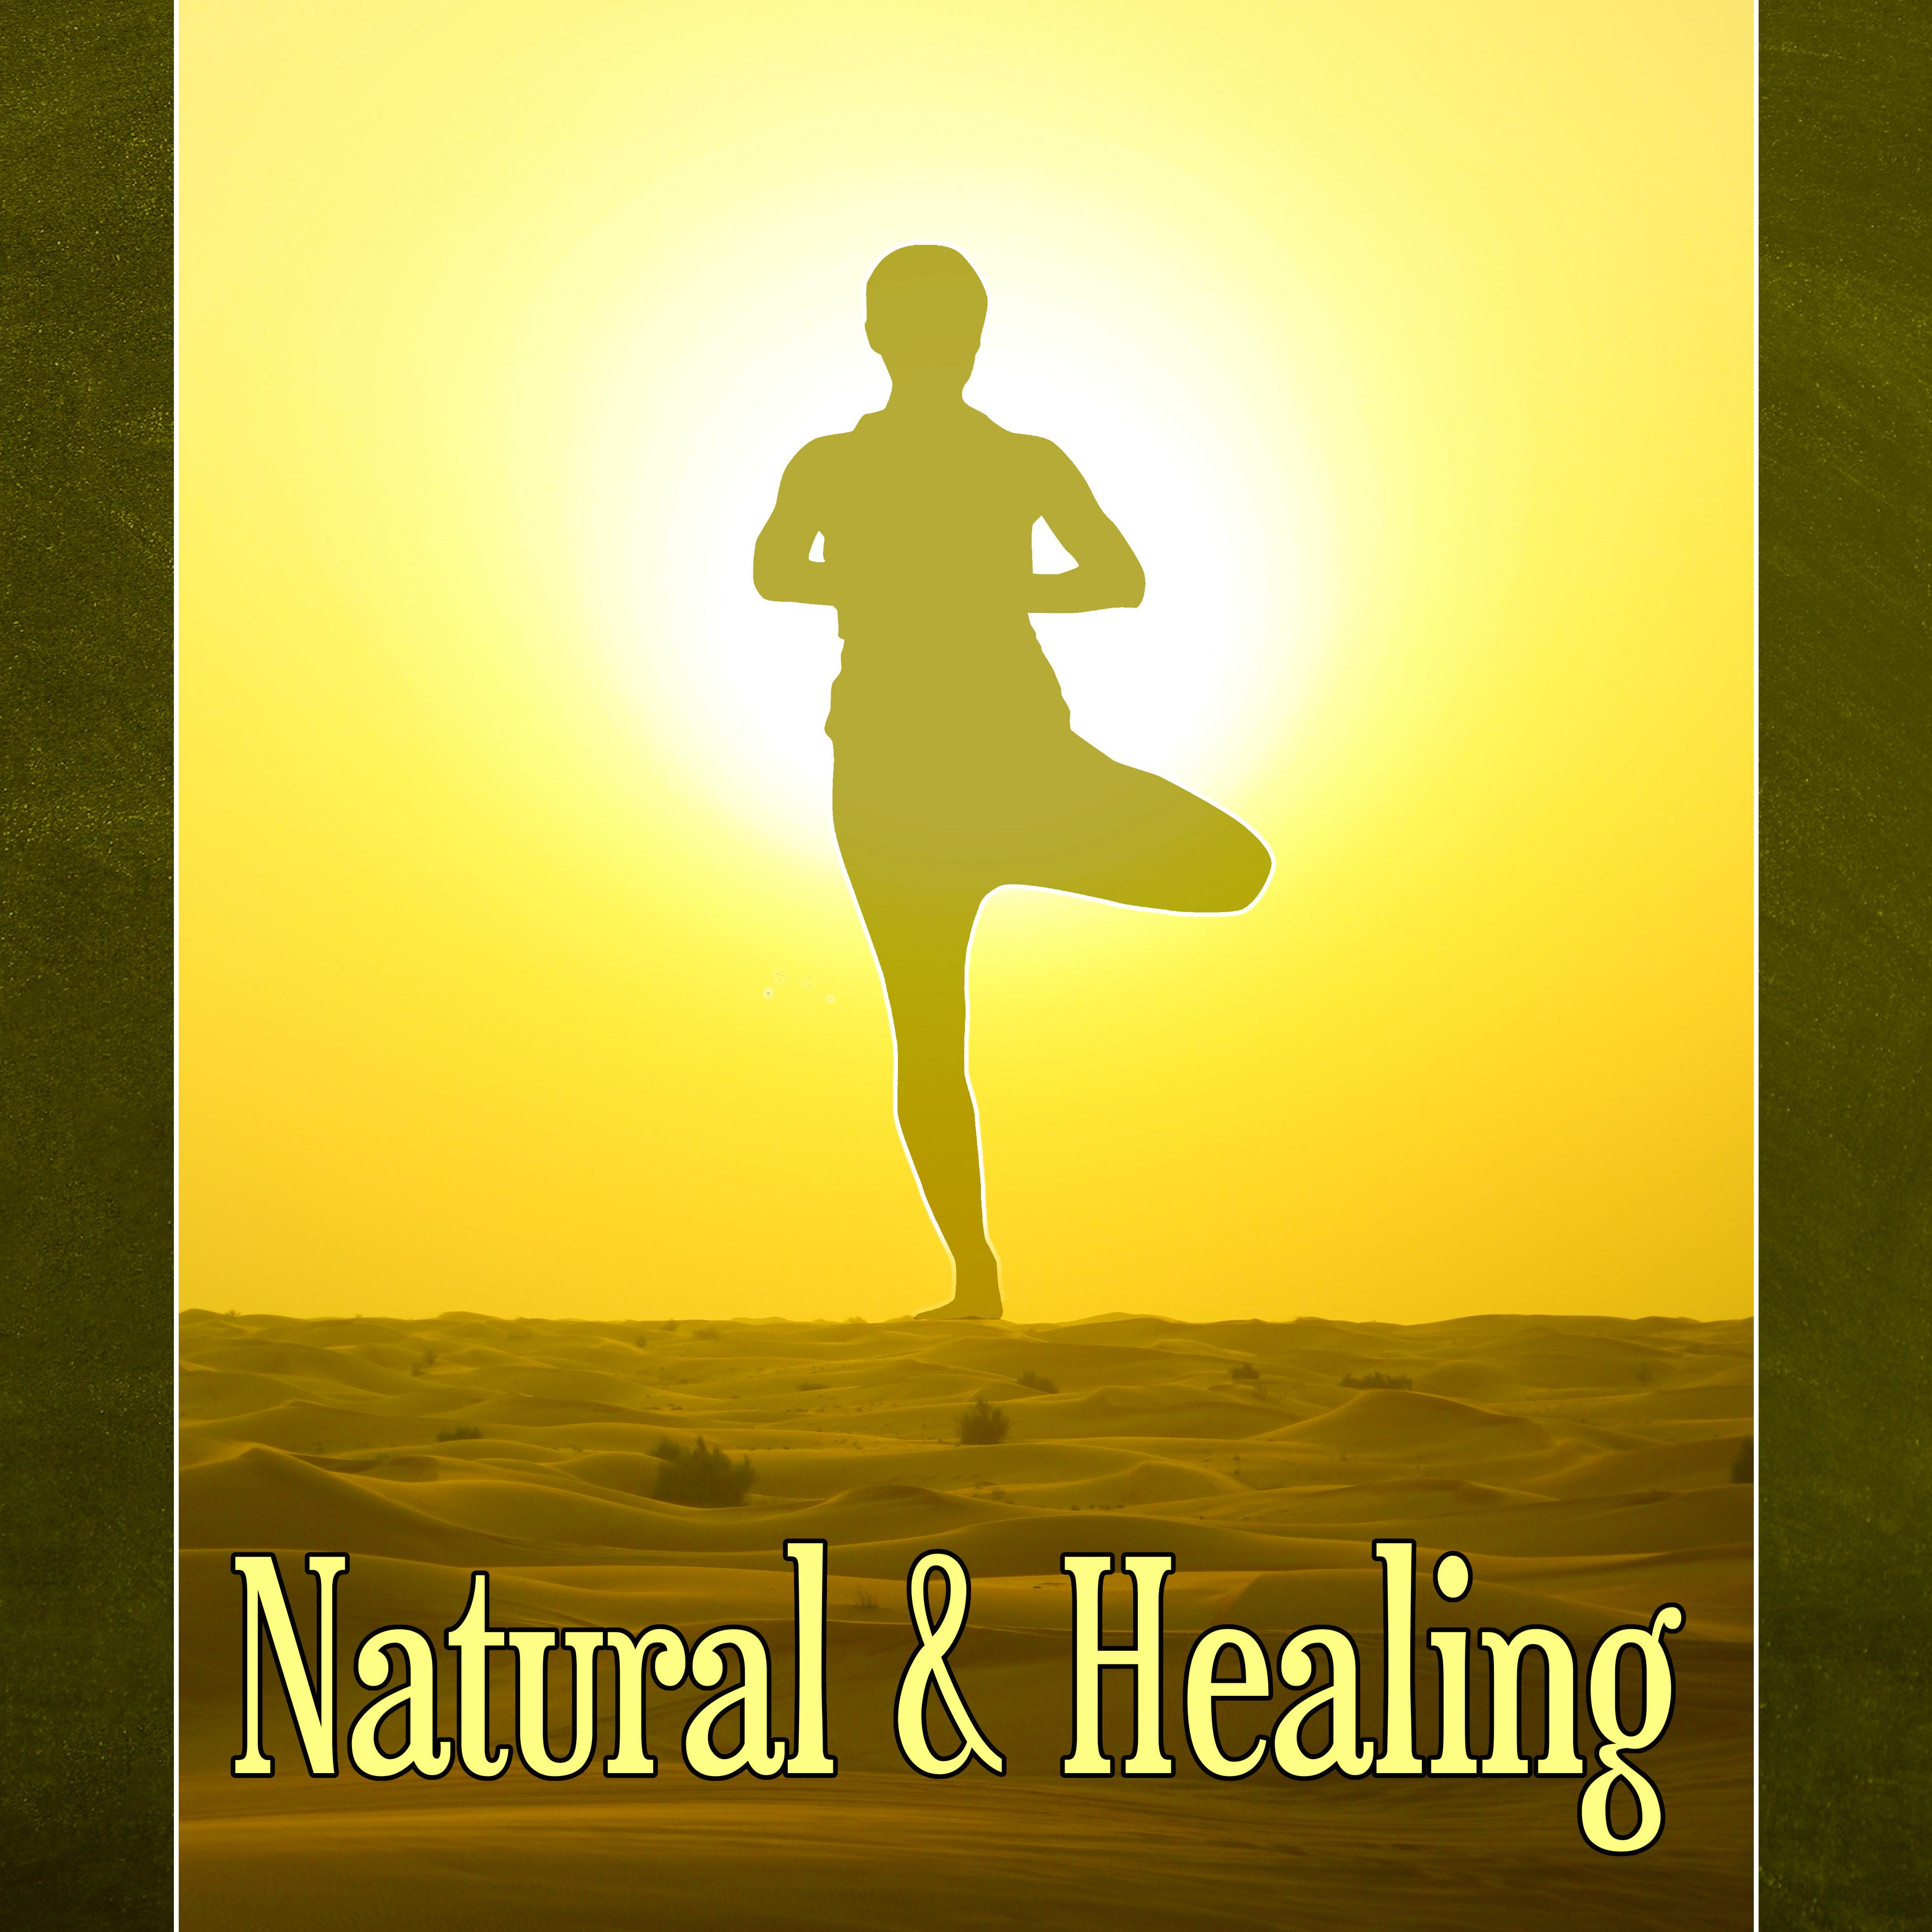 Natural & Healing – Natural Spa Adventure, Healing Massage, Peaceful Music for Deep Zen Meditation & Well Being